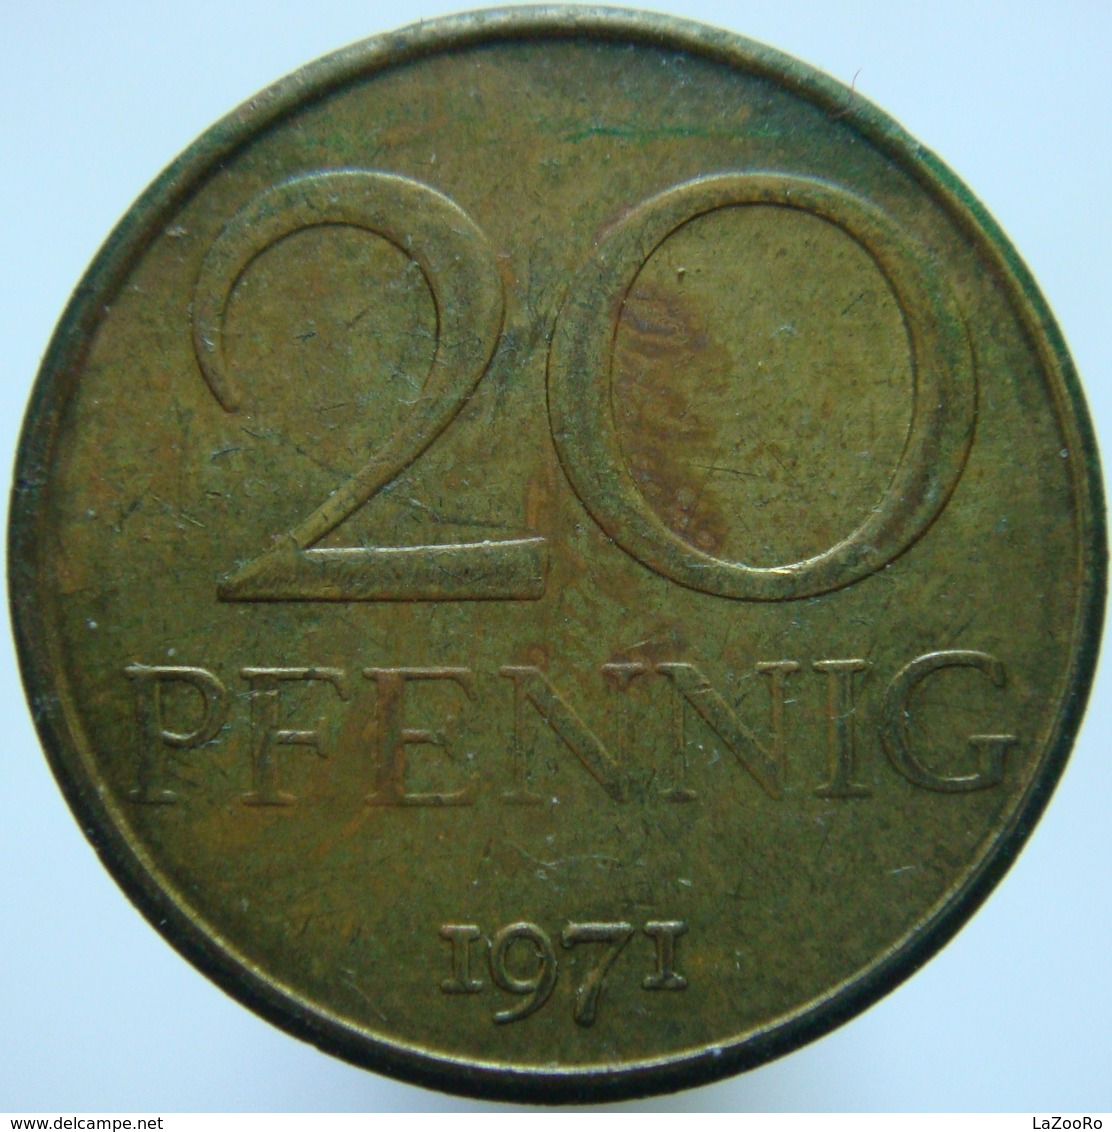 East Germany 20 Pfennig 1971 XF / UNC - 20 Pfennig